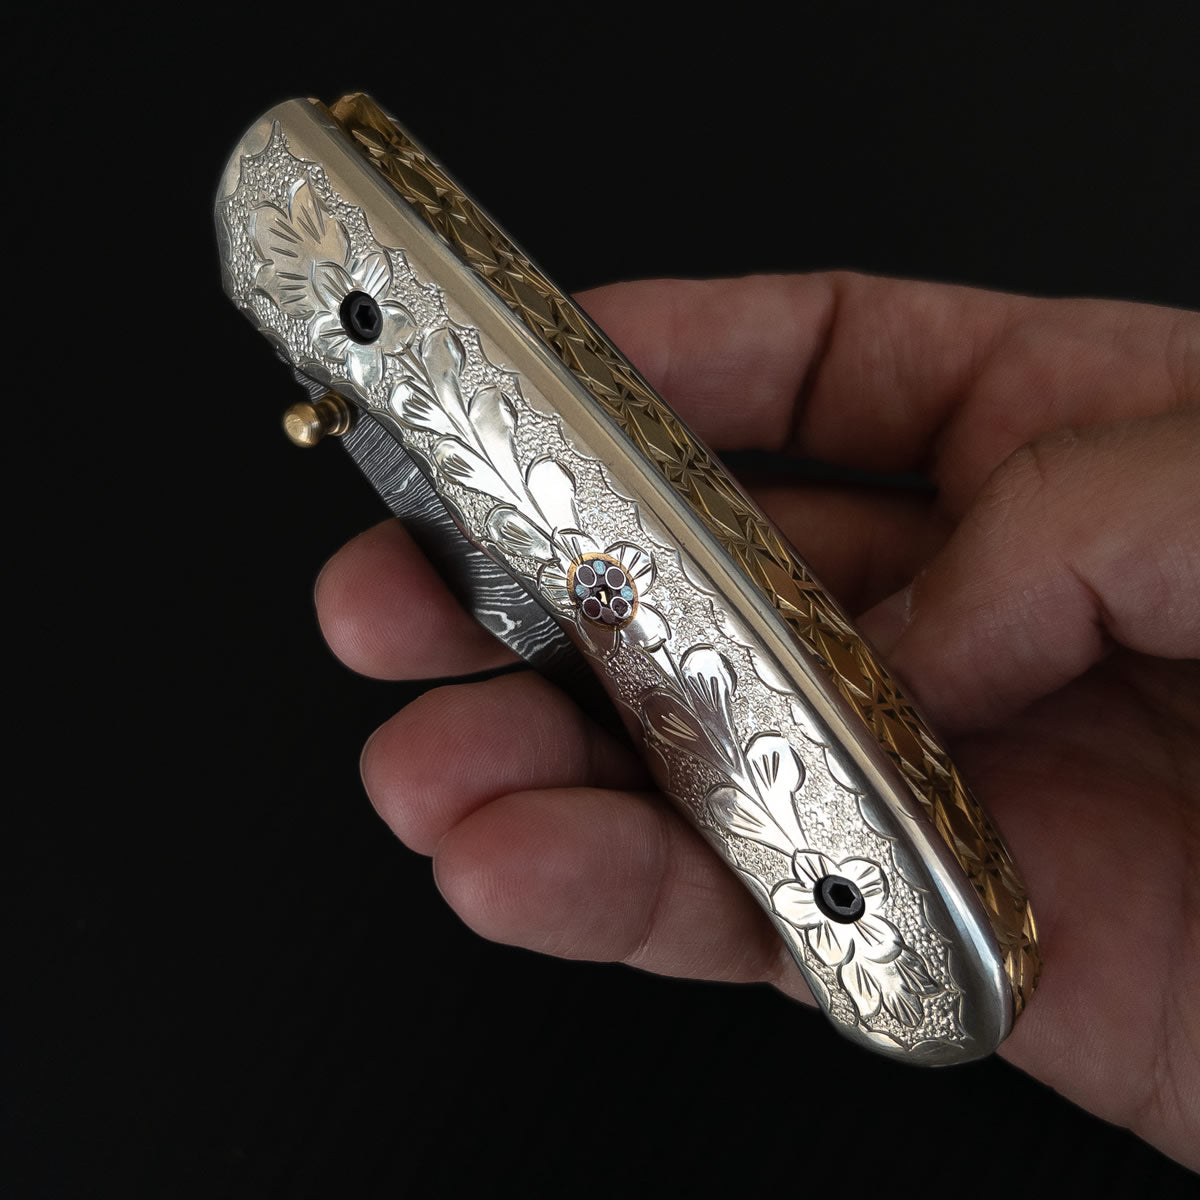 Canivete artesanal de coleção com lâmina em aço damasco.